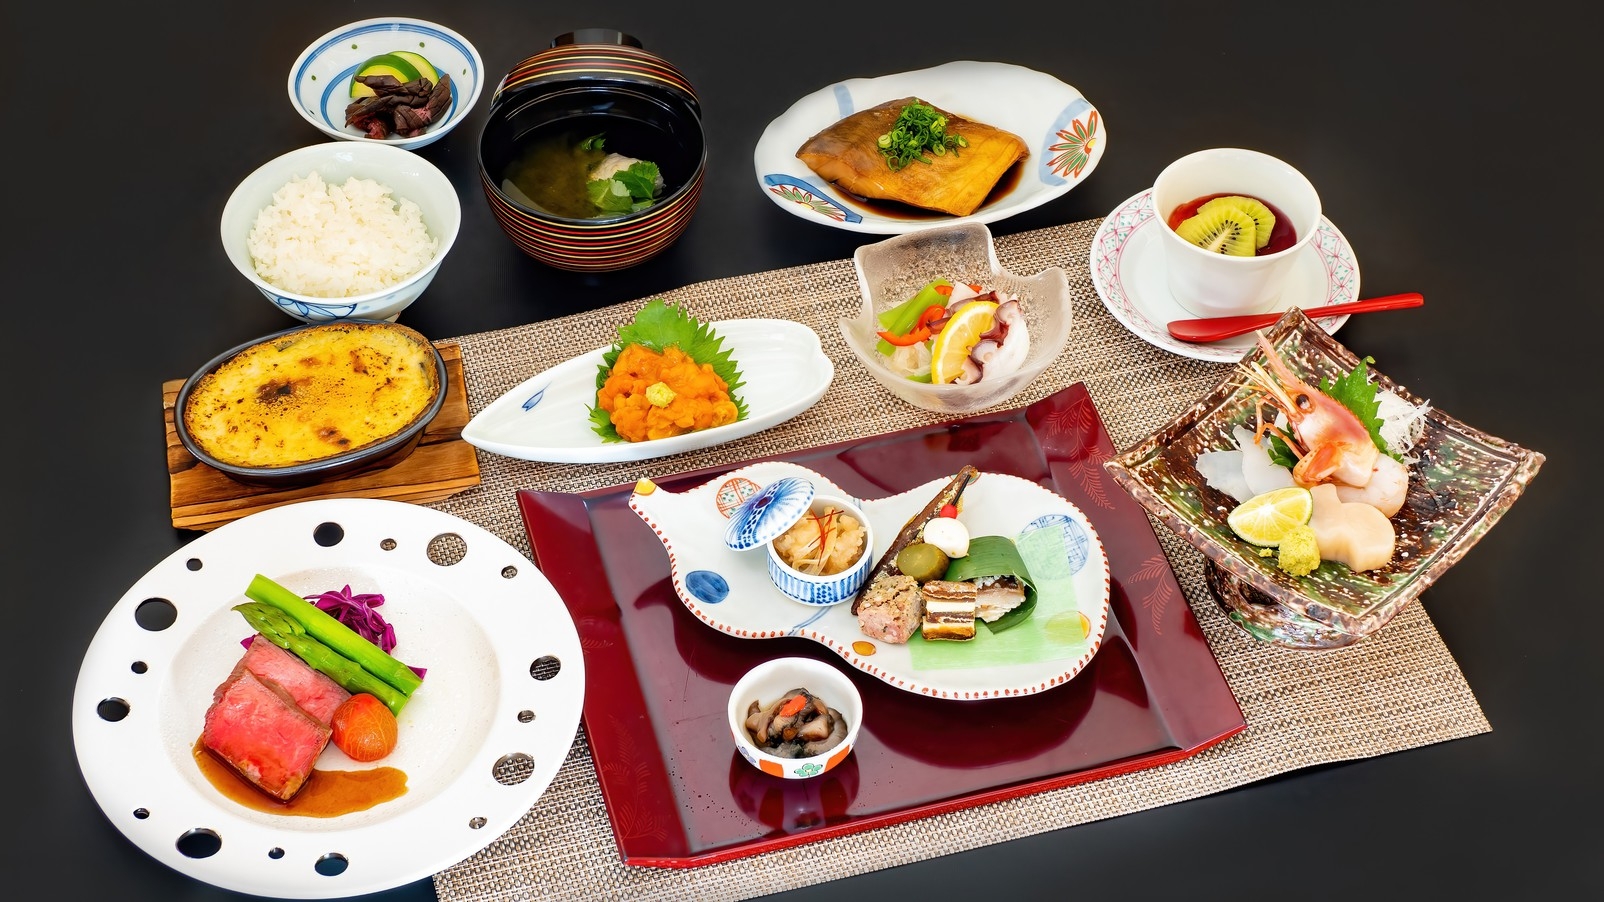 【2食付き】北海道の恵みを味わう「懐石料理」と「花の浮島・礼文島」の絶景を楽しむ旅